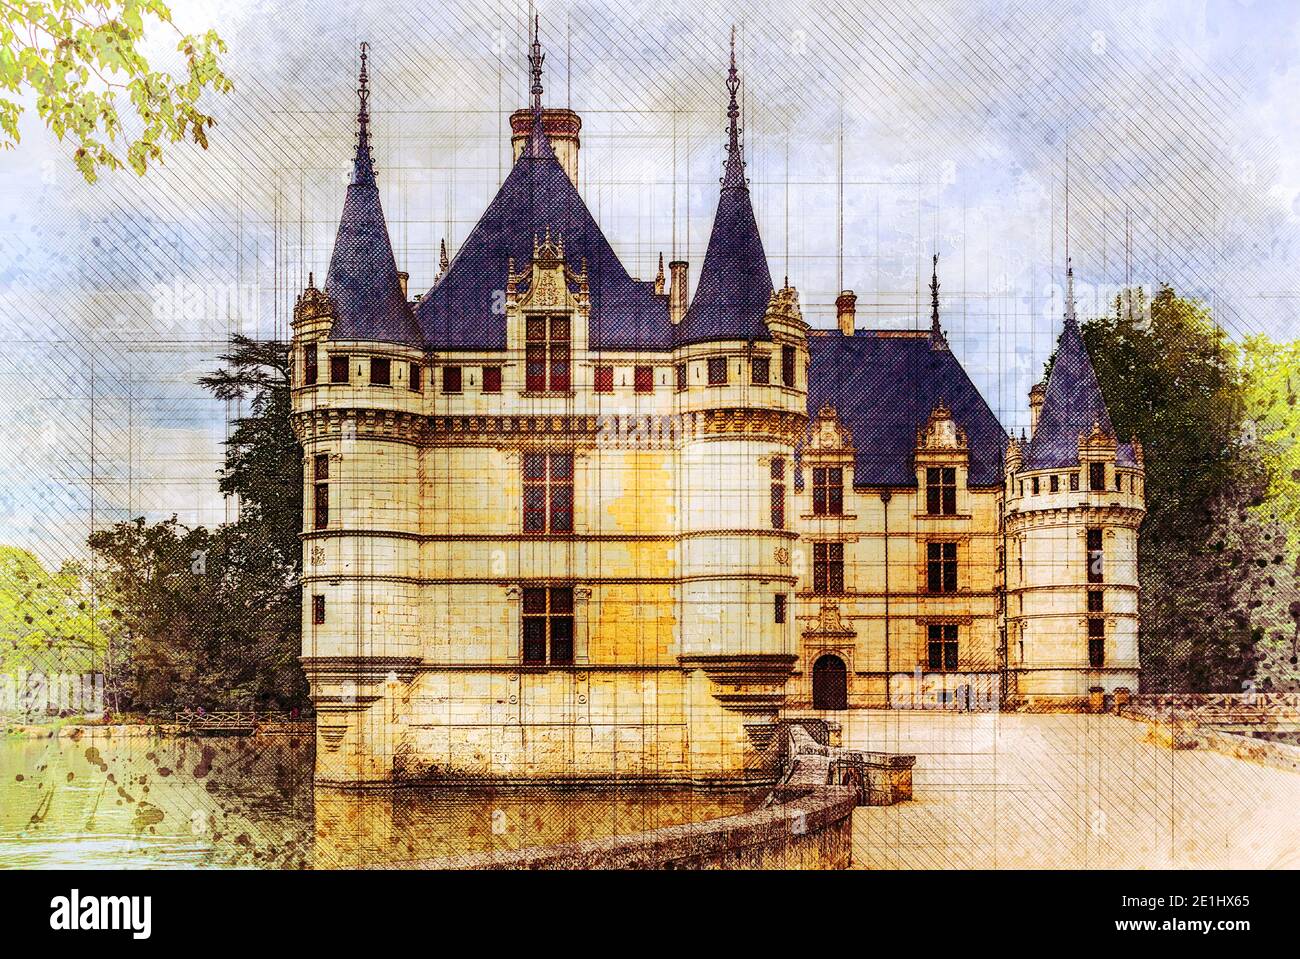 Magnifique château 'Château d'Azay le Rideau' Val de Loire, France - croquis en aquarelle Banque D'Images